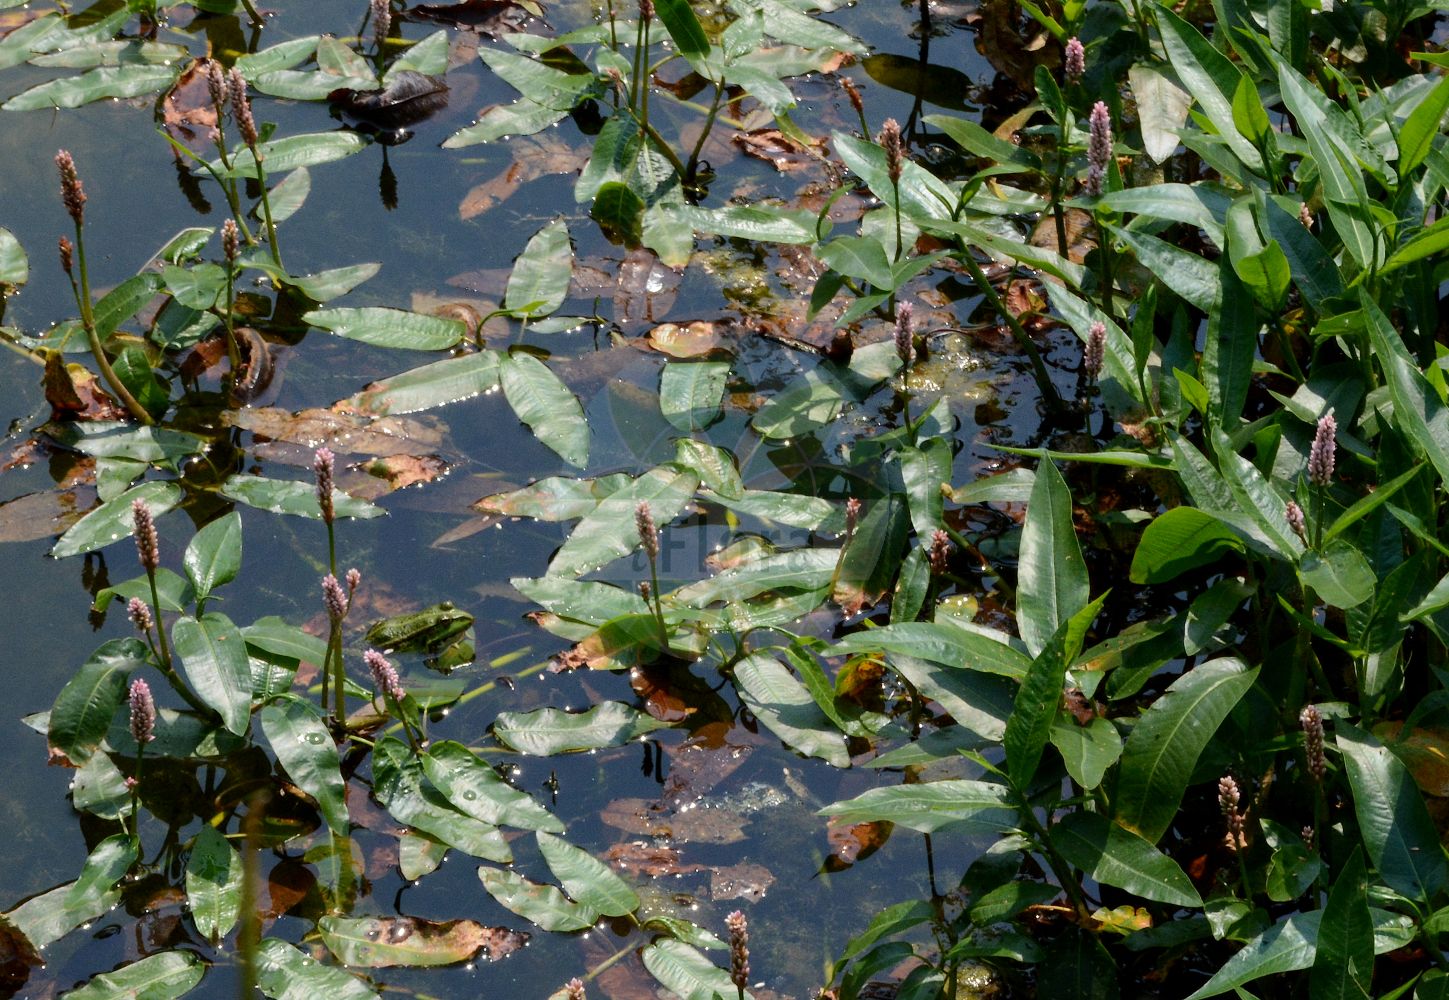 Foto von Persicaria amphibia (Wasser-Knöterich - Amphibious Bistort). Das Foto wurde in Bonn, Nordrhein-Westfalen, Deutschland aufgenommen. ---- Photo of Persicaria amphibia (Wasser-Knöterich - Amphibious Bistort). The picture was taken in Bonn, North Rhine-Westphalia, Germany.(Persicaria amphibia,Wasser-Knöterich,Amphibious Bistort,Persicaria amphibia,Polygonum amphibium,Polygonum amphibium var. terrestre,Wasser-Knoeterich,Amphibious Bistort,Water Knotweed,Devil's Shoestring,Perennial Knotgrass,Shoestringweed,Swamp Smartweed,Water Smartweed,Willow Grass,Persicaria,Knöterich,Knotgrass,Polygonaceae,Knöterichgewächse,Knotgrass family)